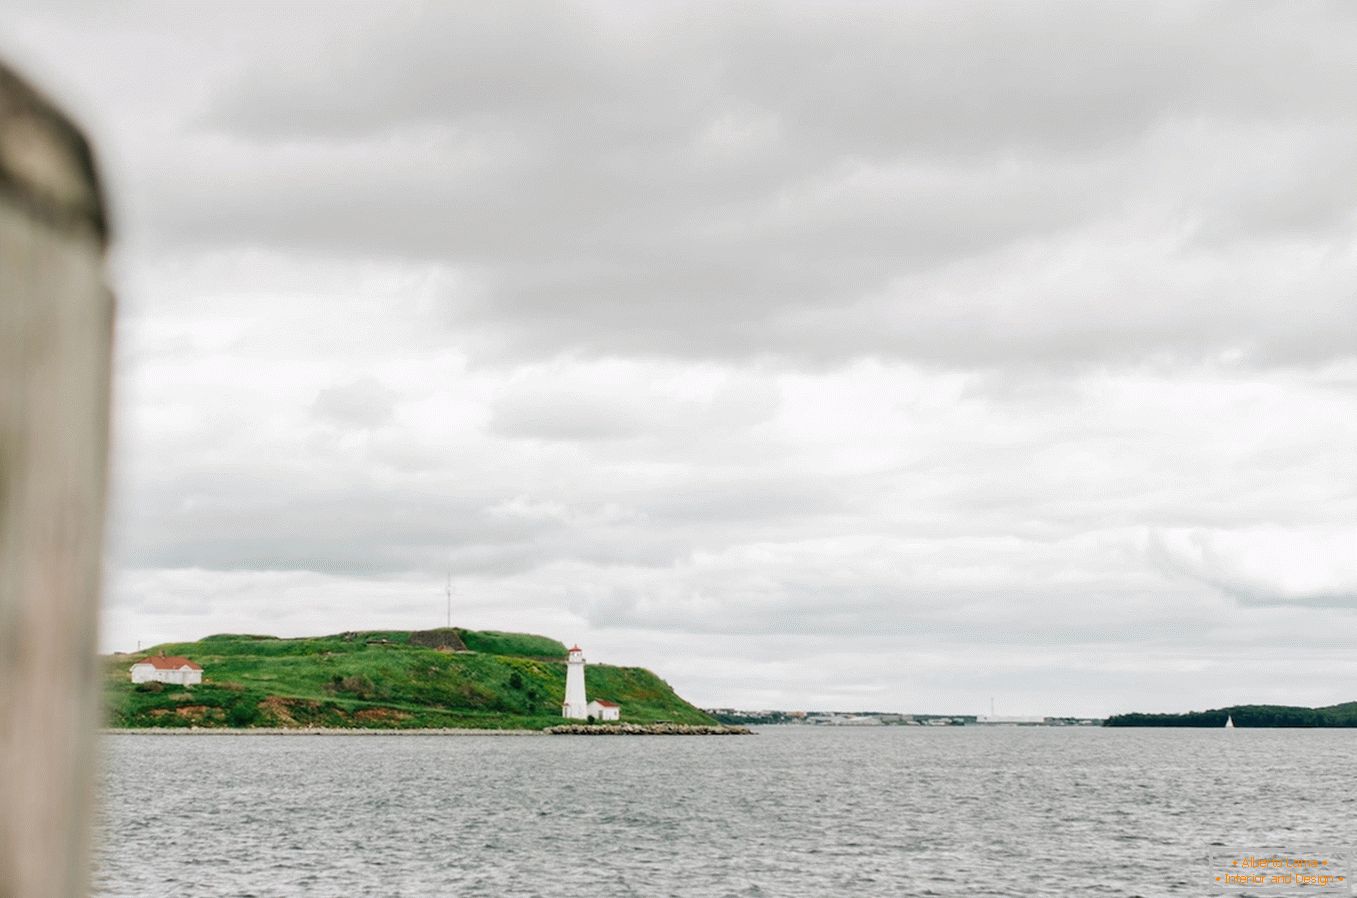 Landscapes of the coast of Nova Scotia